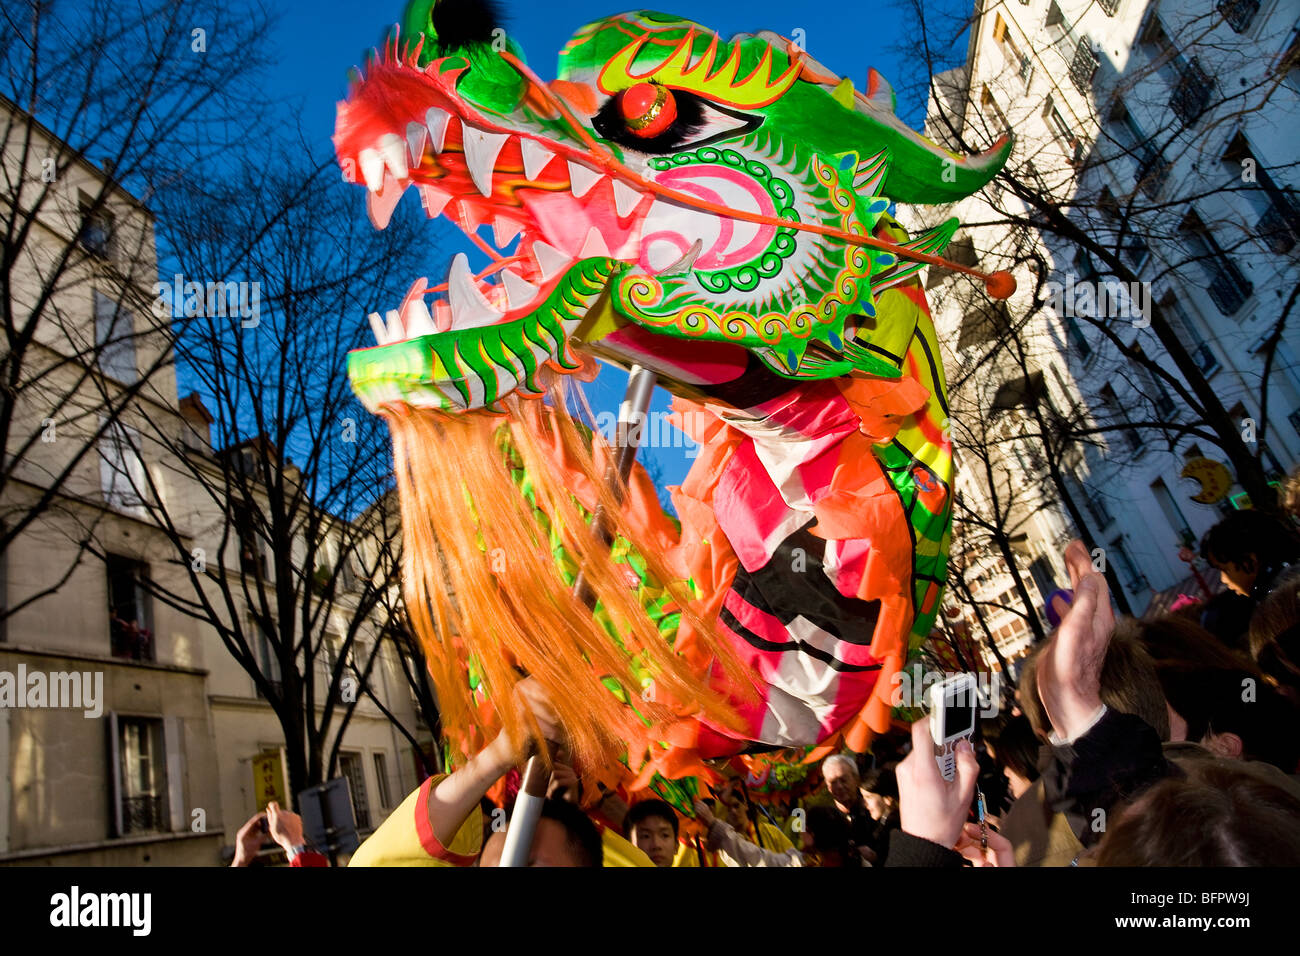 CHINES NEW YEAR, CHINATOWN, PARIS Stock Photo